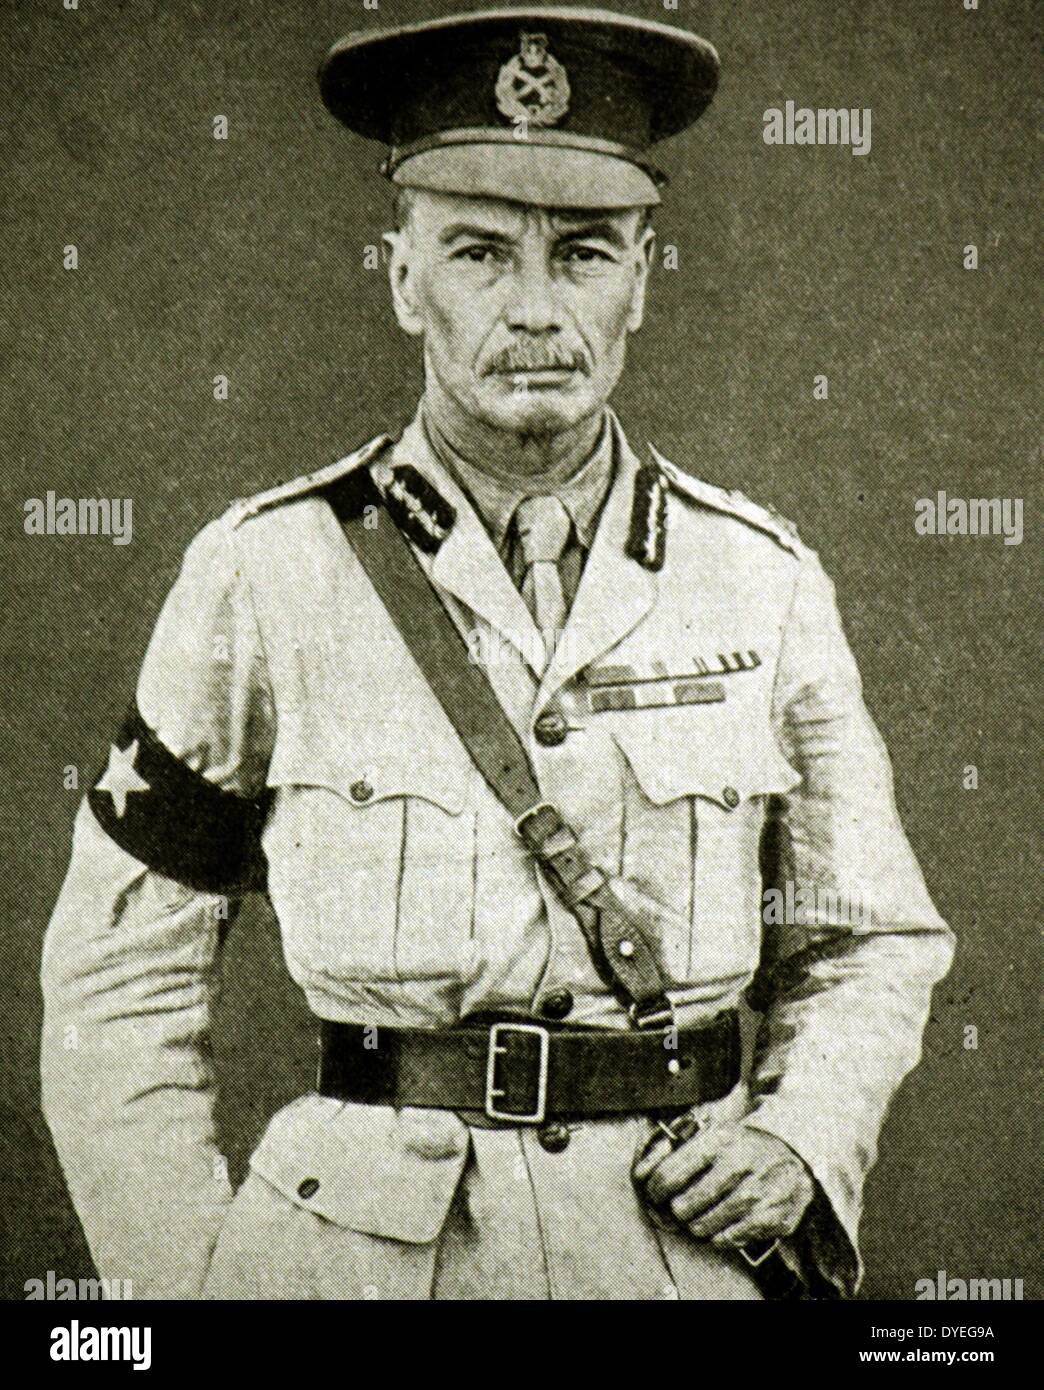 Weltkrieg 1 - Generalmajor Sir HT Brooking, war ein britischer General während des Zweiten Weltkrieges 1. Mesopotamien Expeditionary Force. Stockfoto